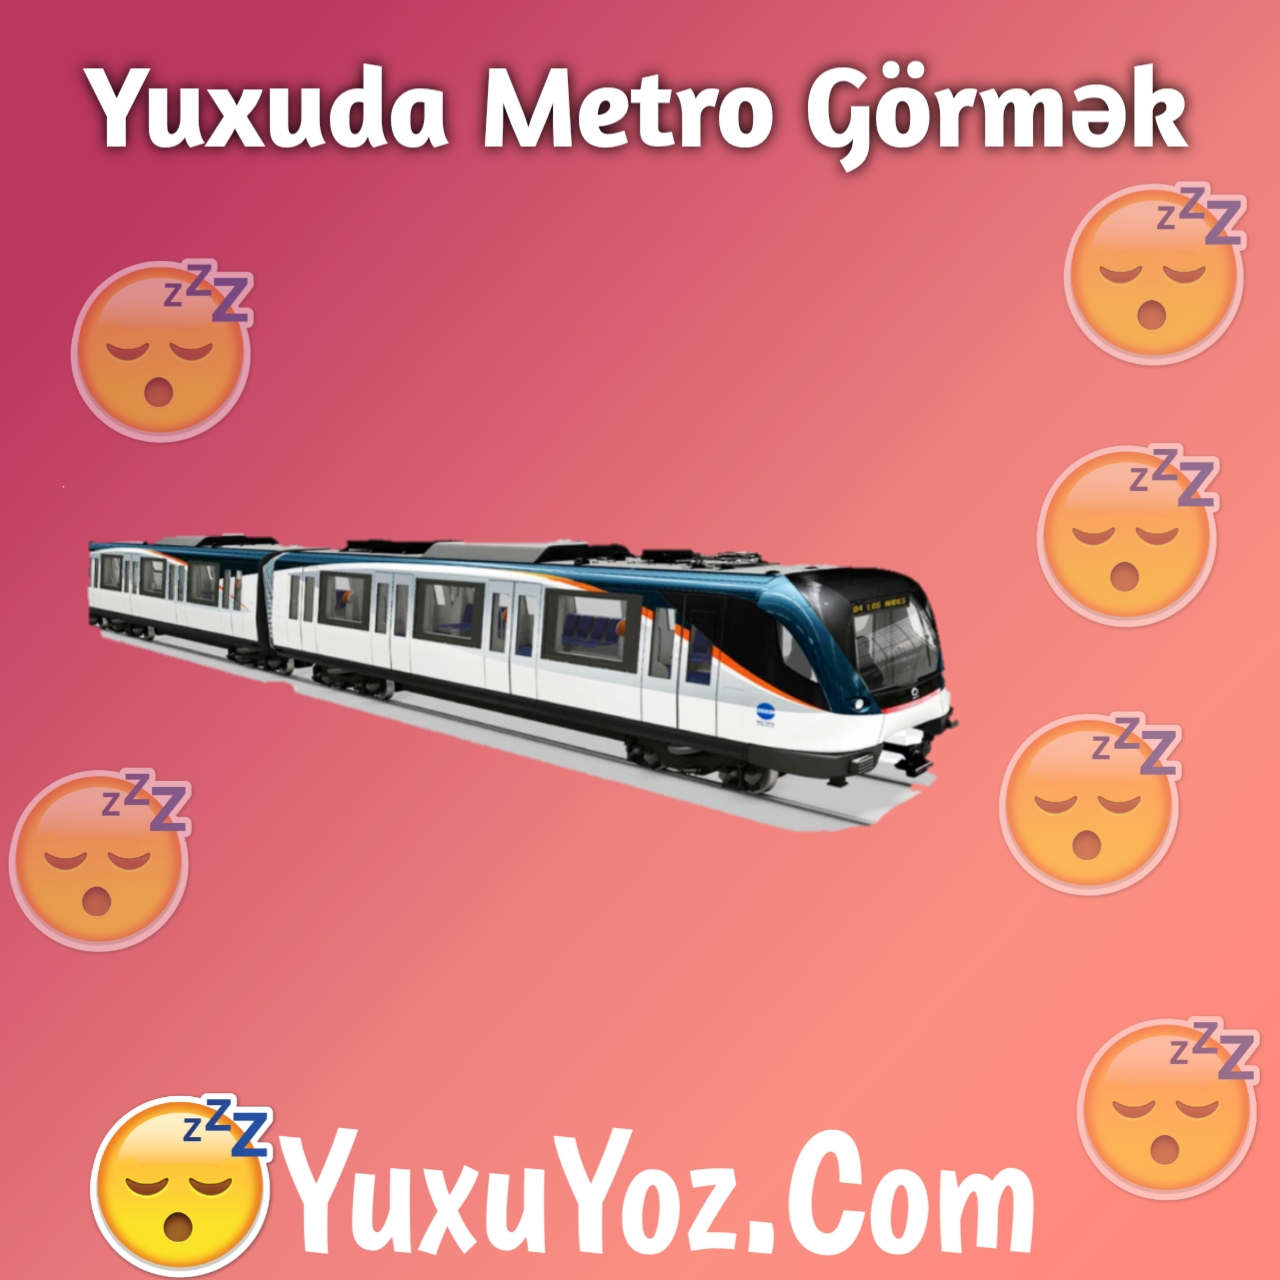 Yuxuda Metro Gormek